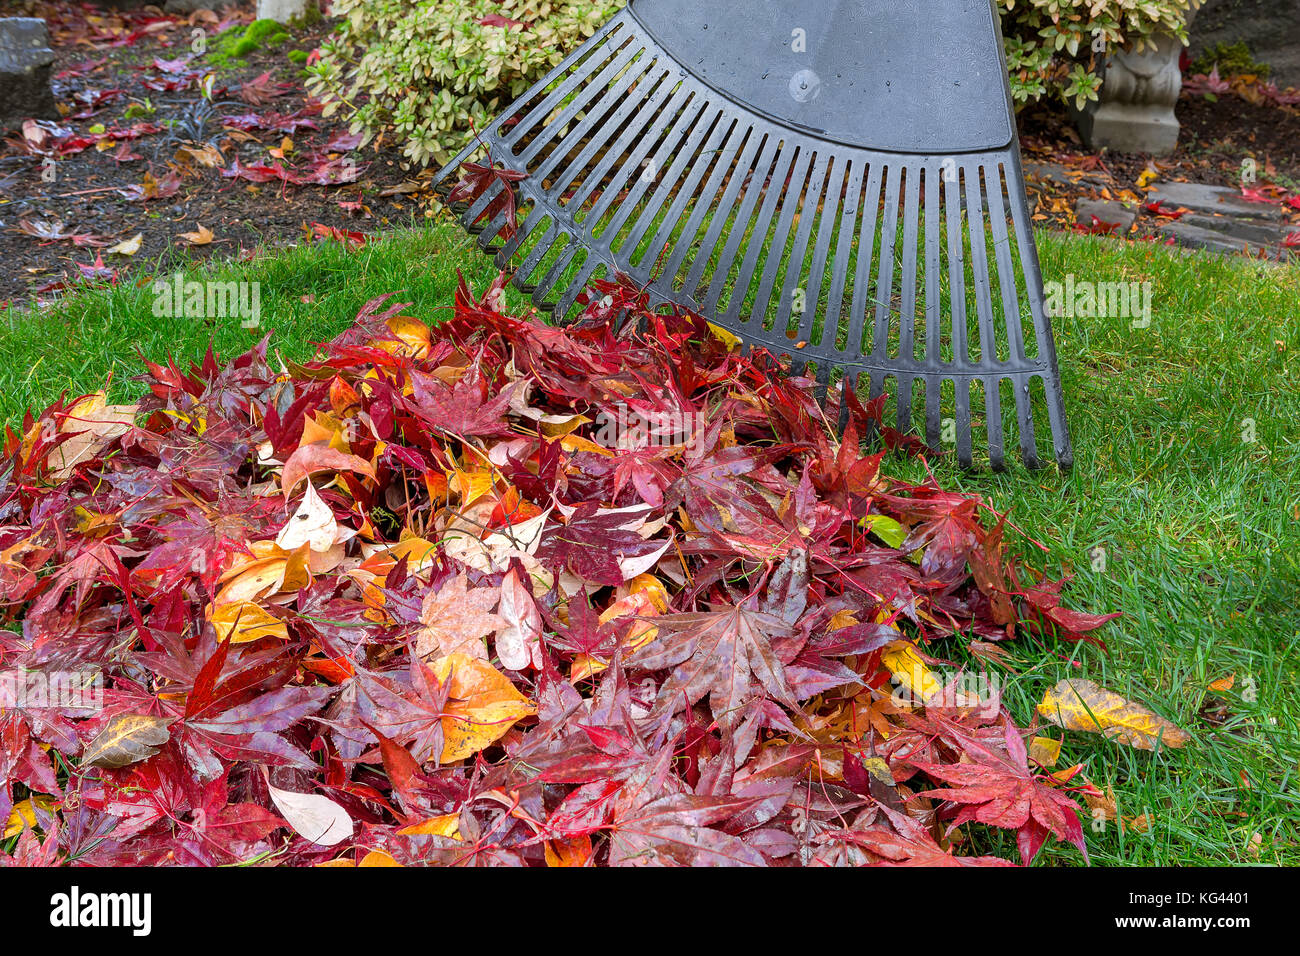 La rastrellatura aceri rossi caduto sul verde prato in giardino durante la stagione autunnale stagione autunnale Foto Stock